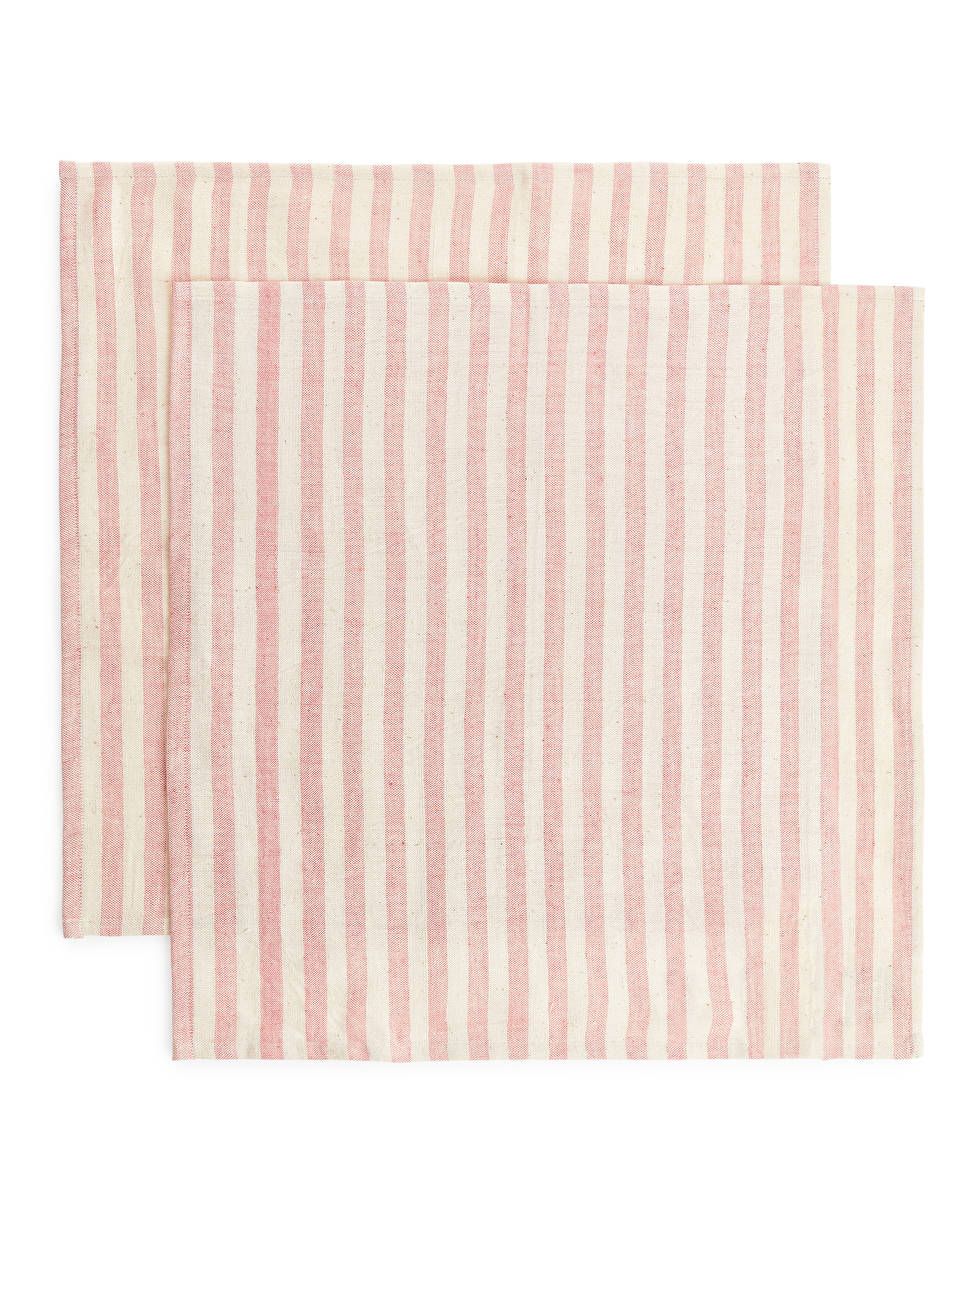 Afroart Cotton Napkin Set of 2 - Beige/Soft Red - ARKET PT | ARKET (US&UK)